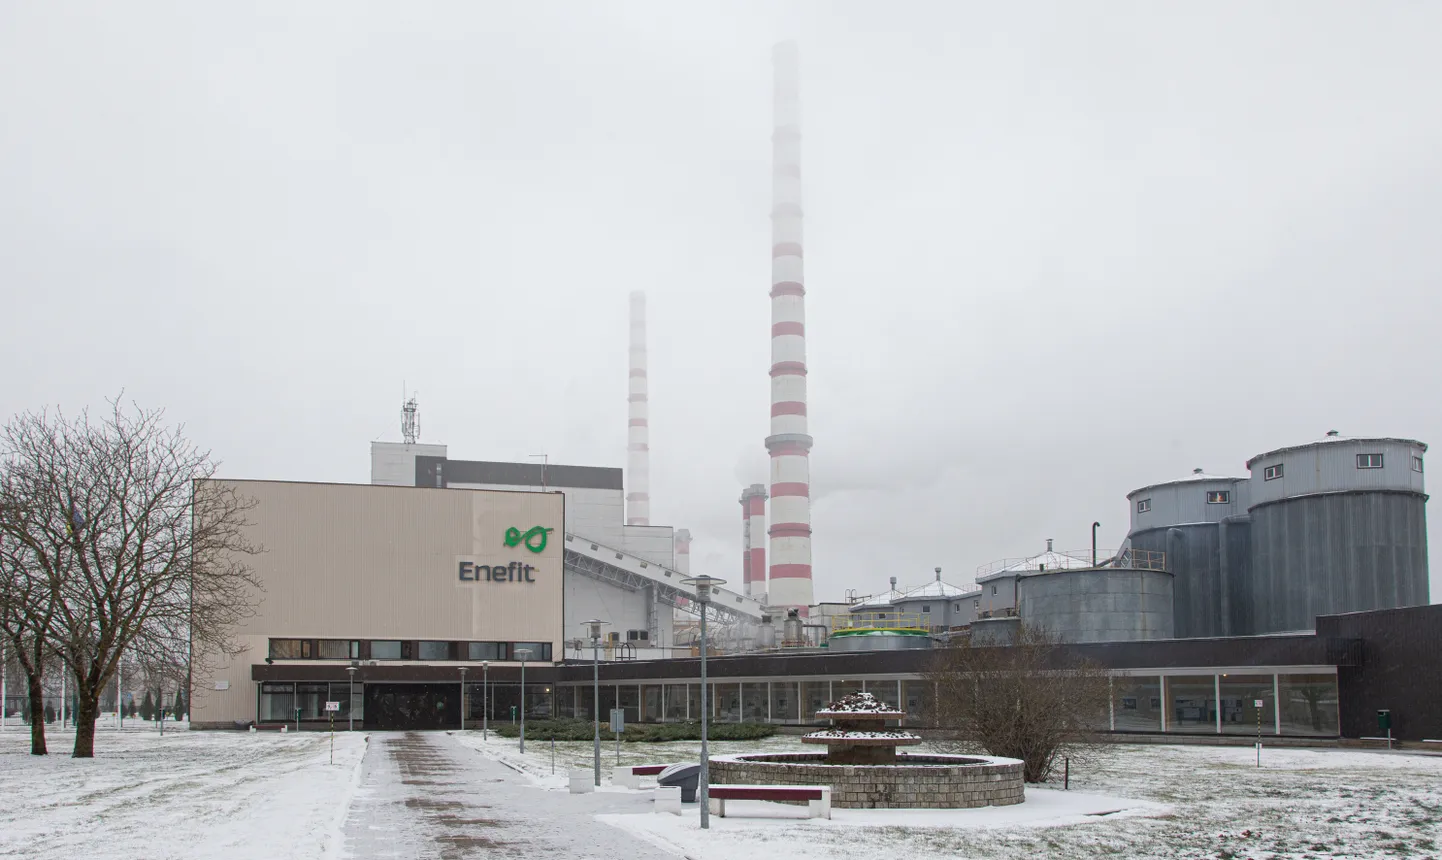 С большой вероятностью и в 2027 году стратегическим резервом электроэнергии должны оставаться старые котлы с кипящим слоем "Eesti Energia" в Ида-Вирумаа.